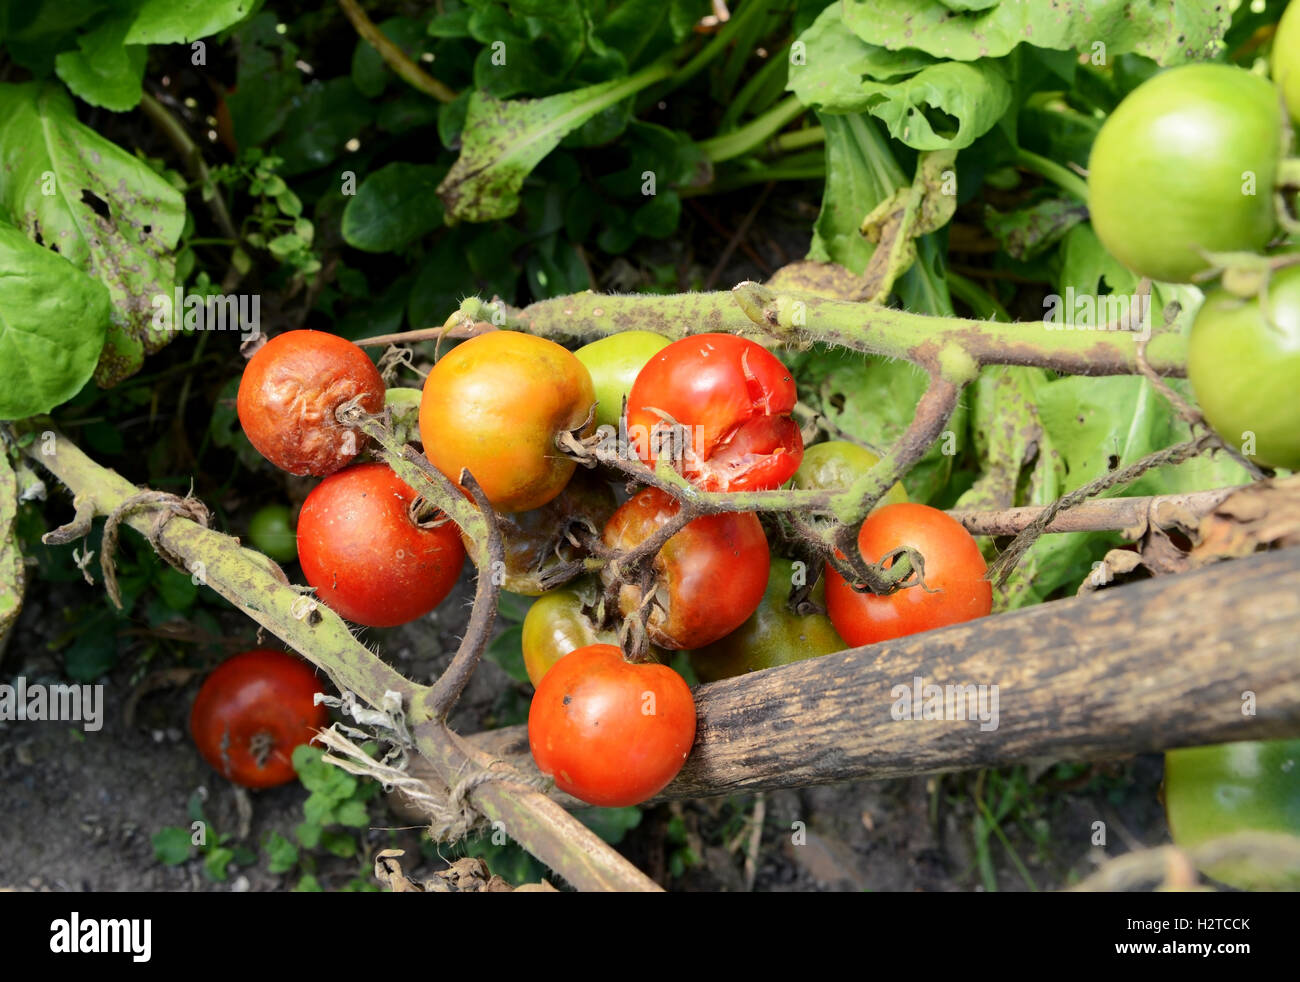 Traversen von Split und Cherry-Tomaten im Gemüsebeet Plage heimgesucht. Pflanzenstängel zeigen braune Flecken der Krankheit. Stockfoto